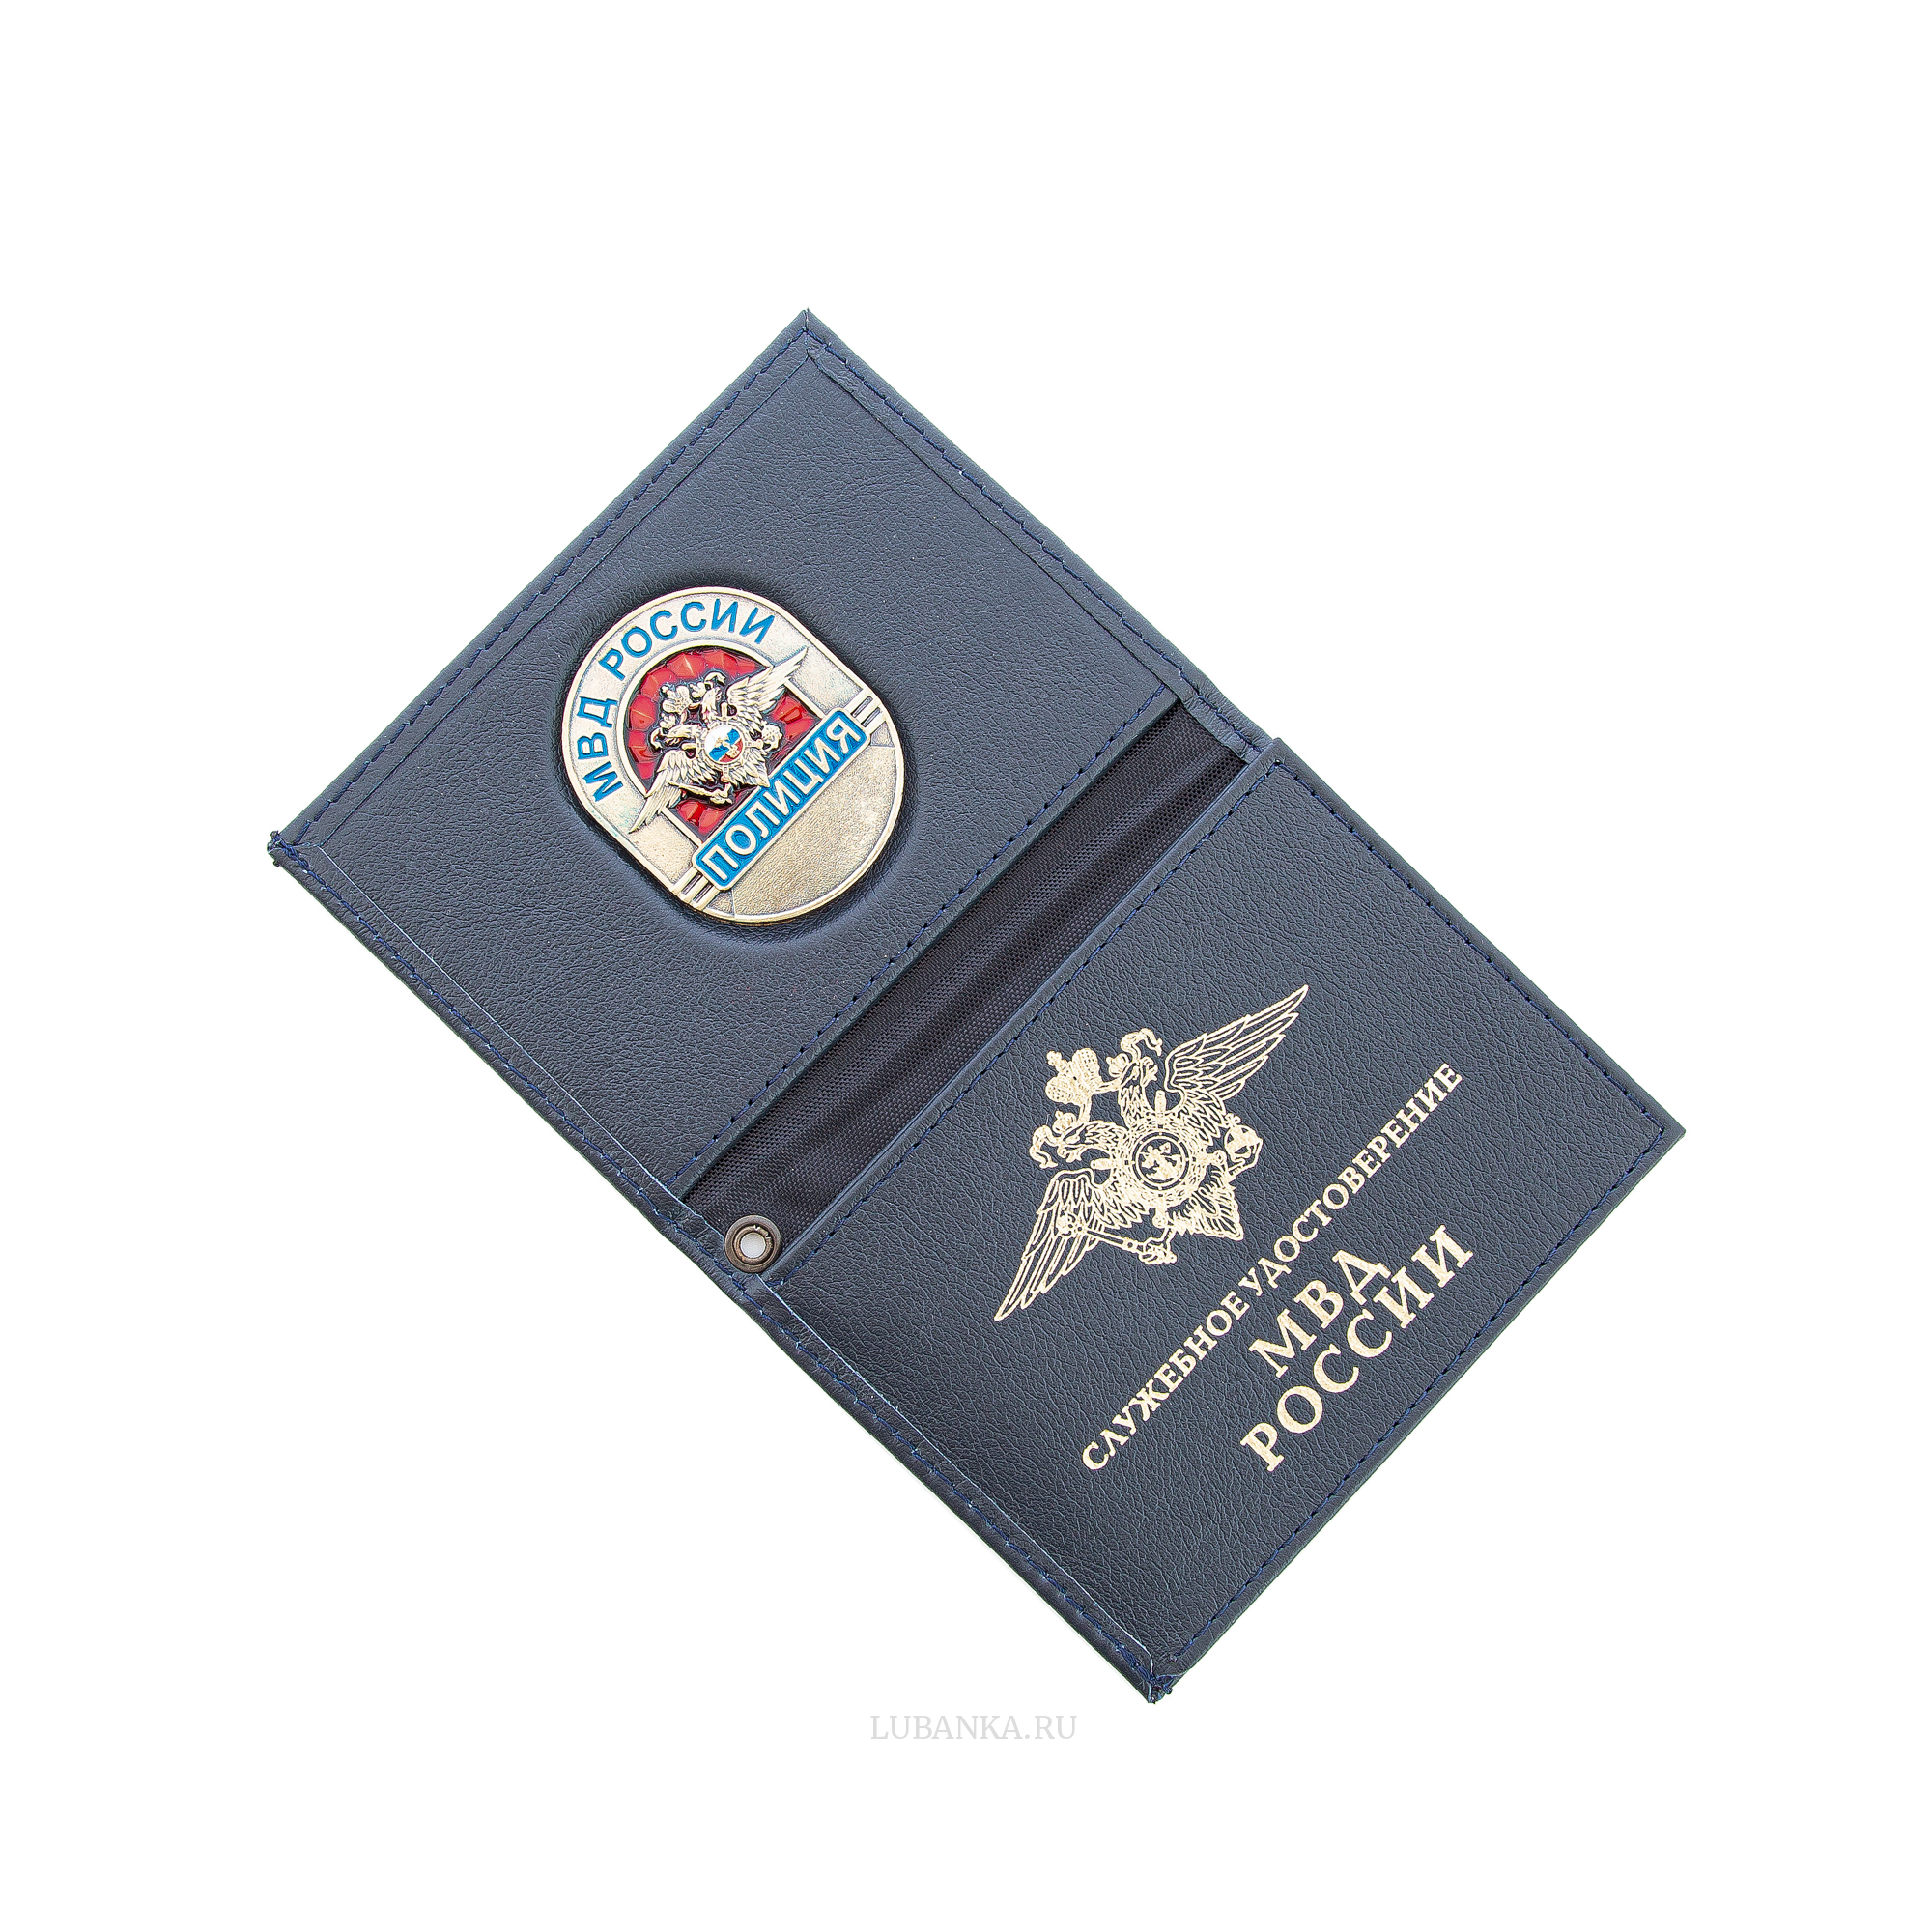 Обложка для удостоверения «Полиция России» с жетоном тёмно-синяя